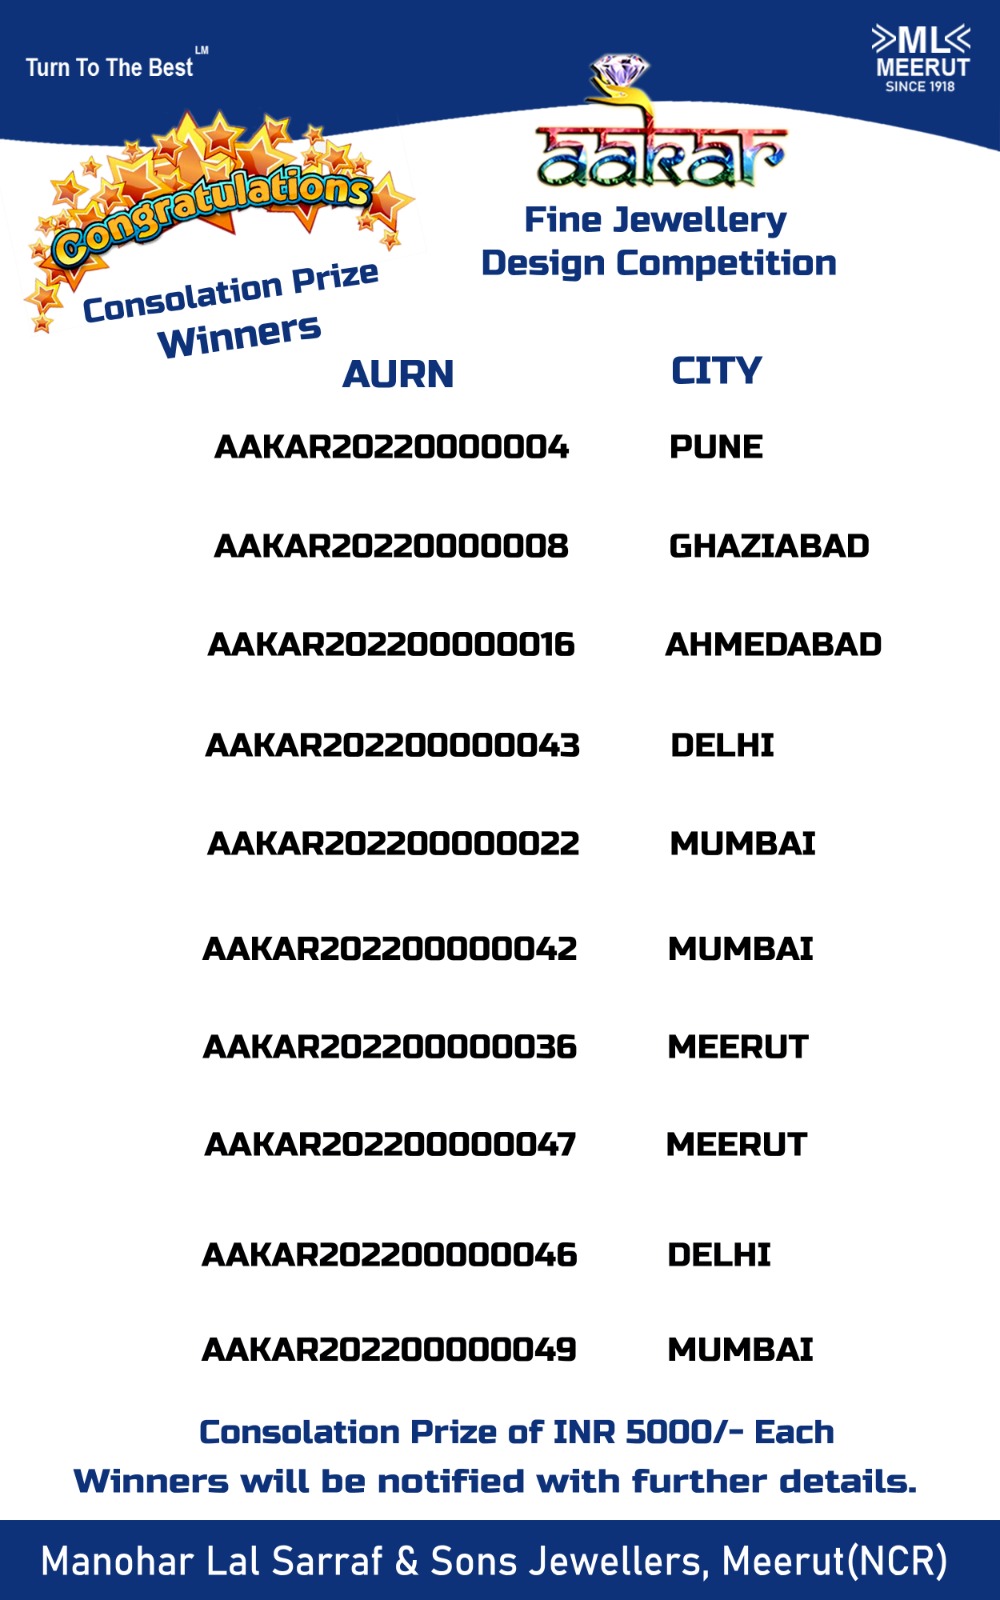 aakar winners